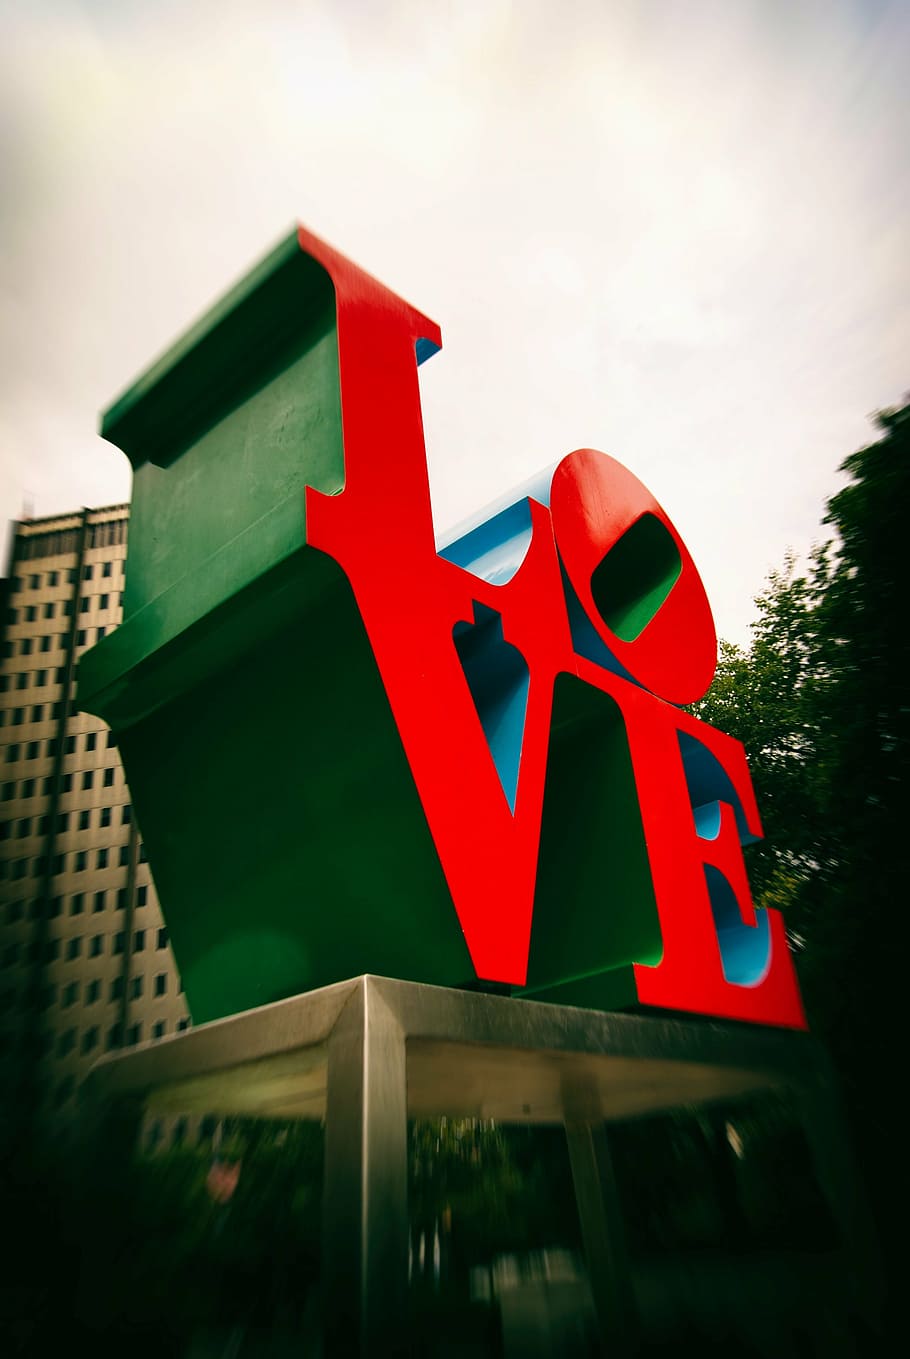 赤, 緑, 愛の像, 建築, 建物, インフラストラクチャ, デザイン, ぼかし, 愛, 構築された構造